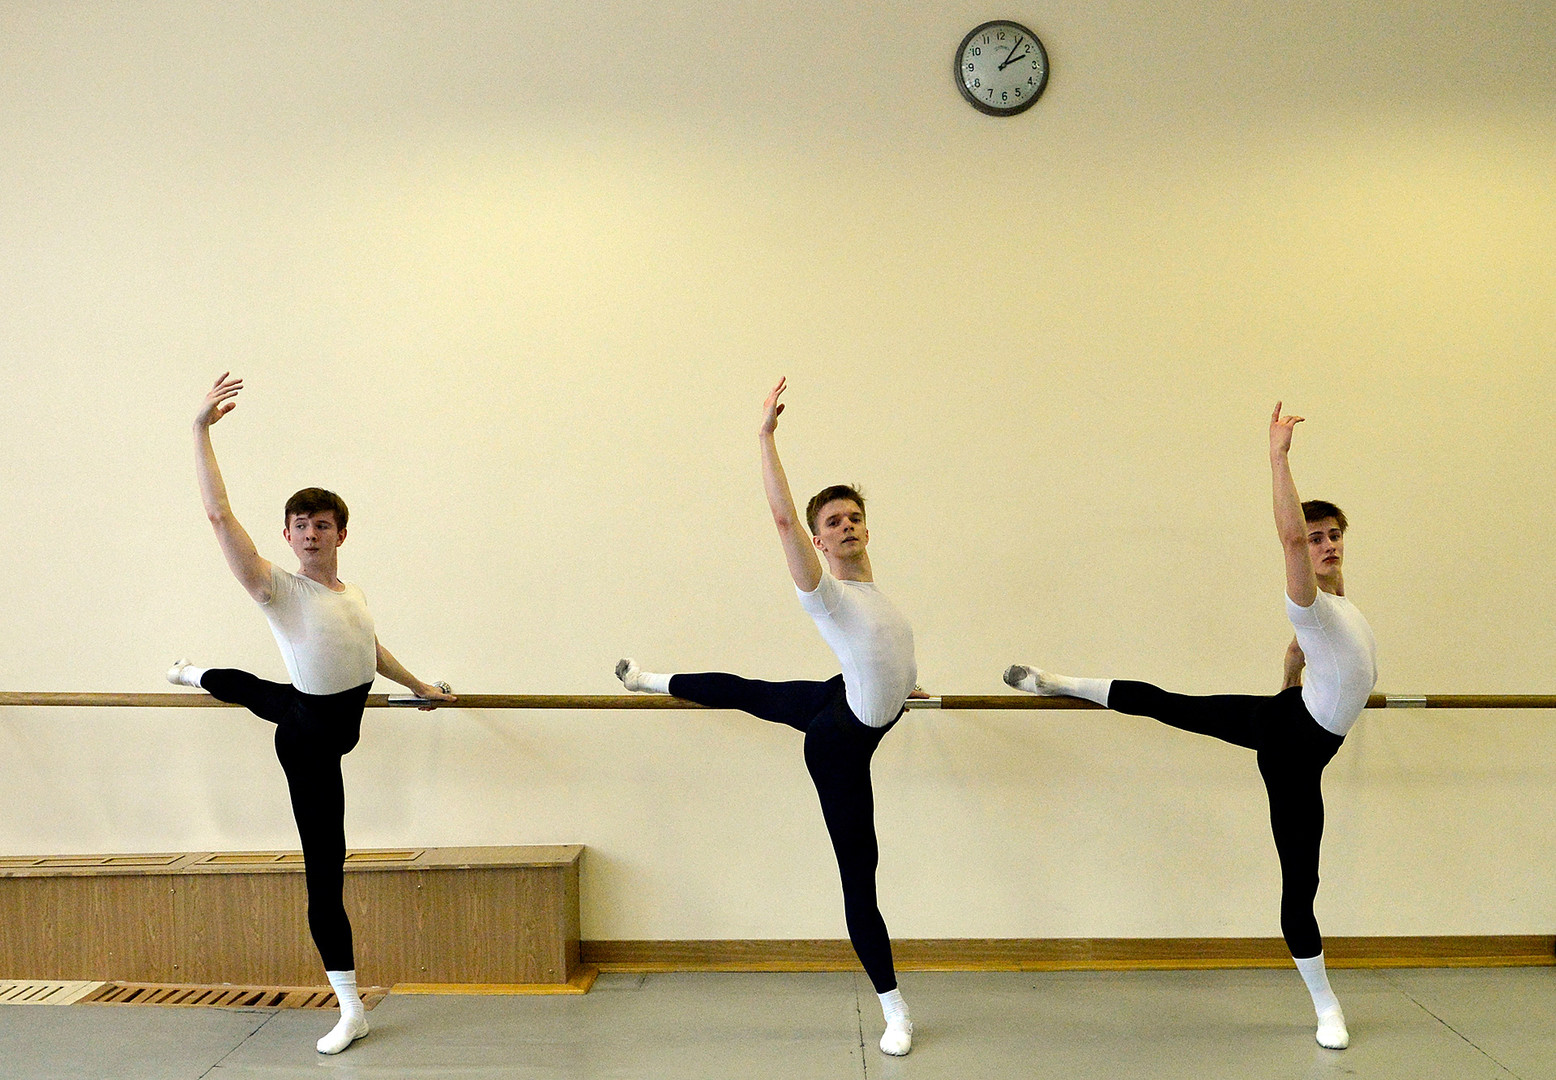 Los estudiantes de la Academia de Ballet del Bolshói durante la clase, Moscú